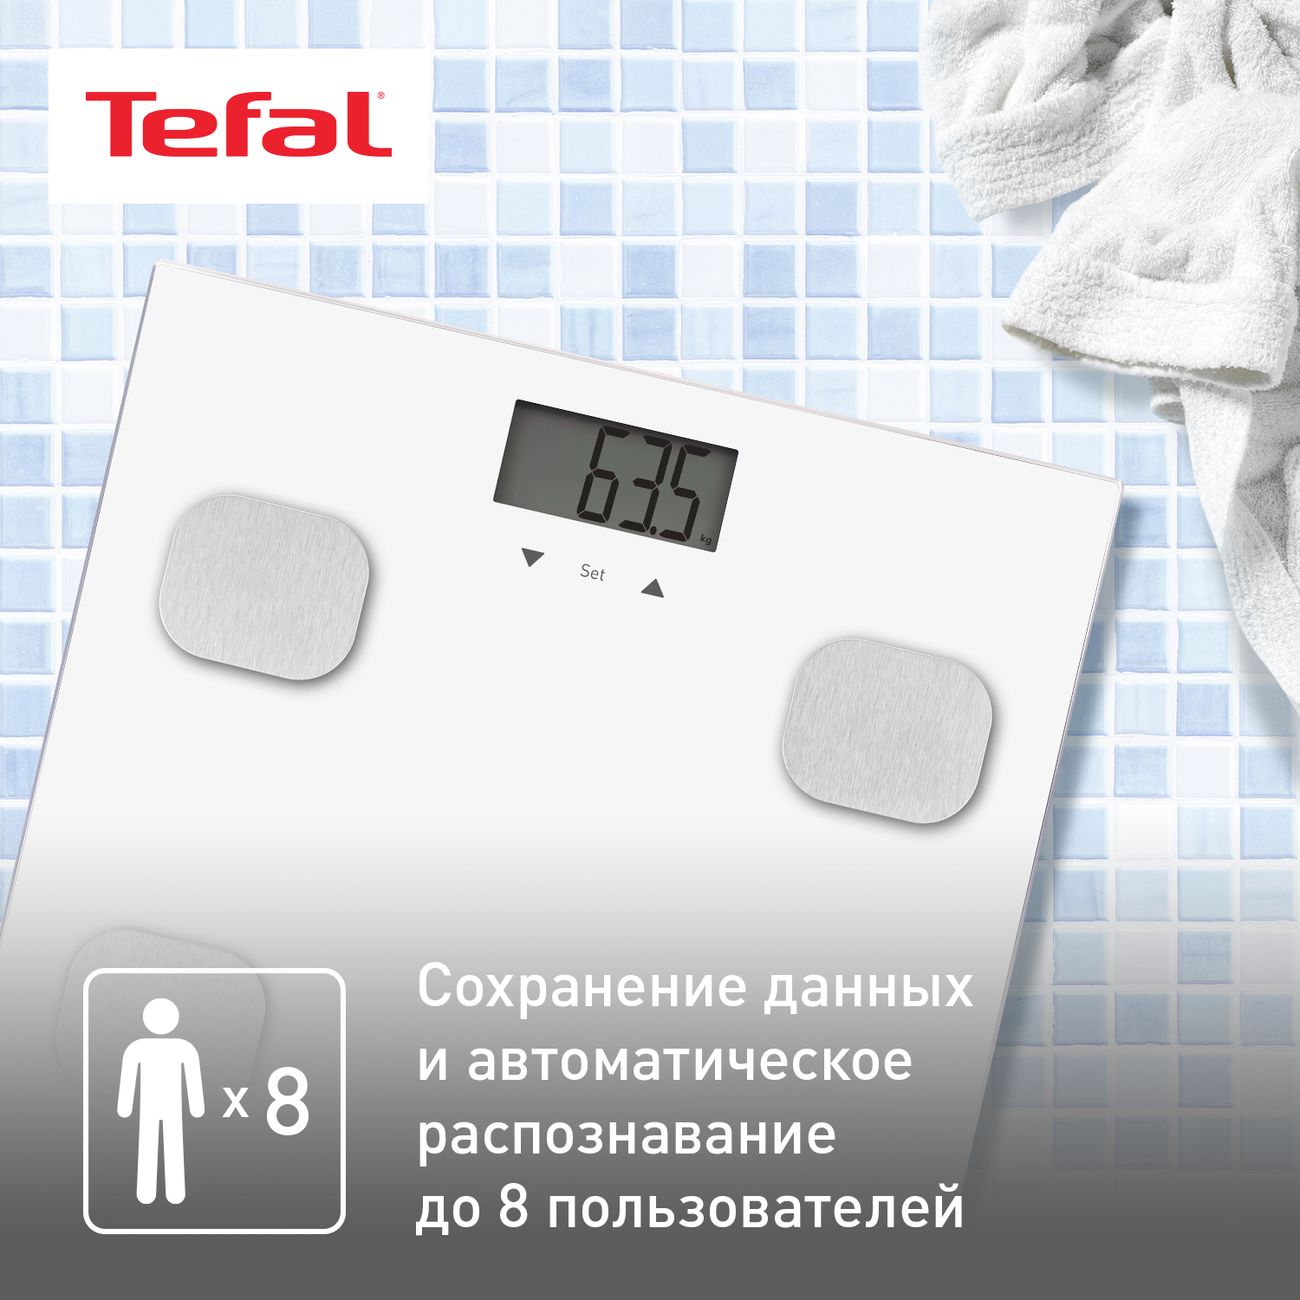 Ремонт весов в Алмате — цены, адреса сервисных центров